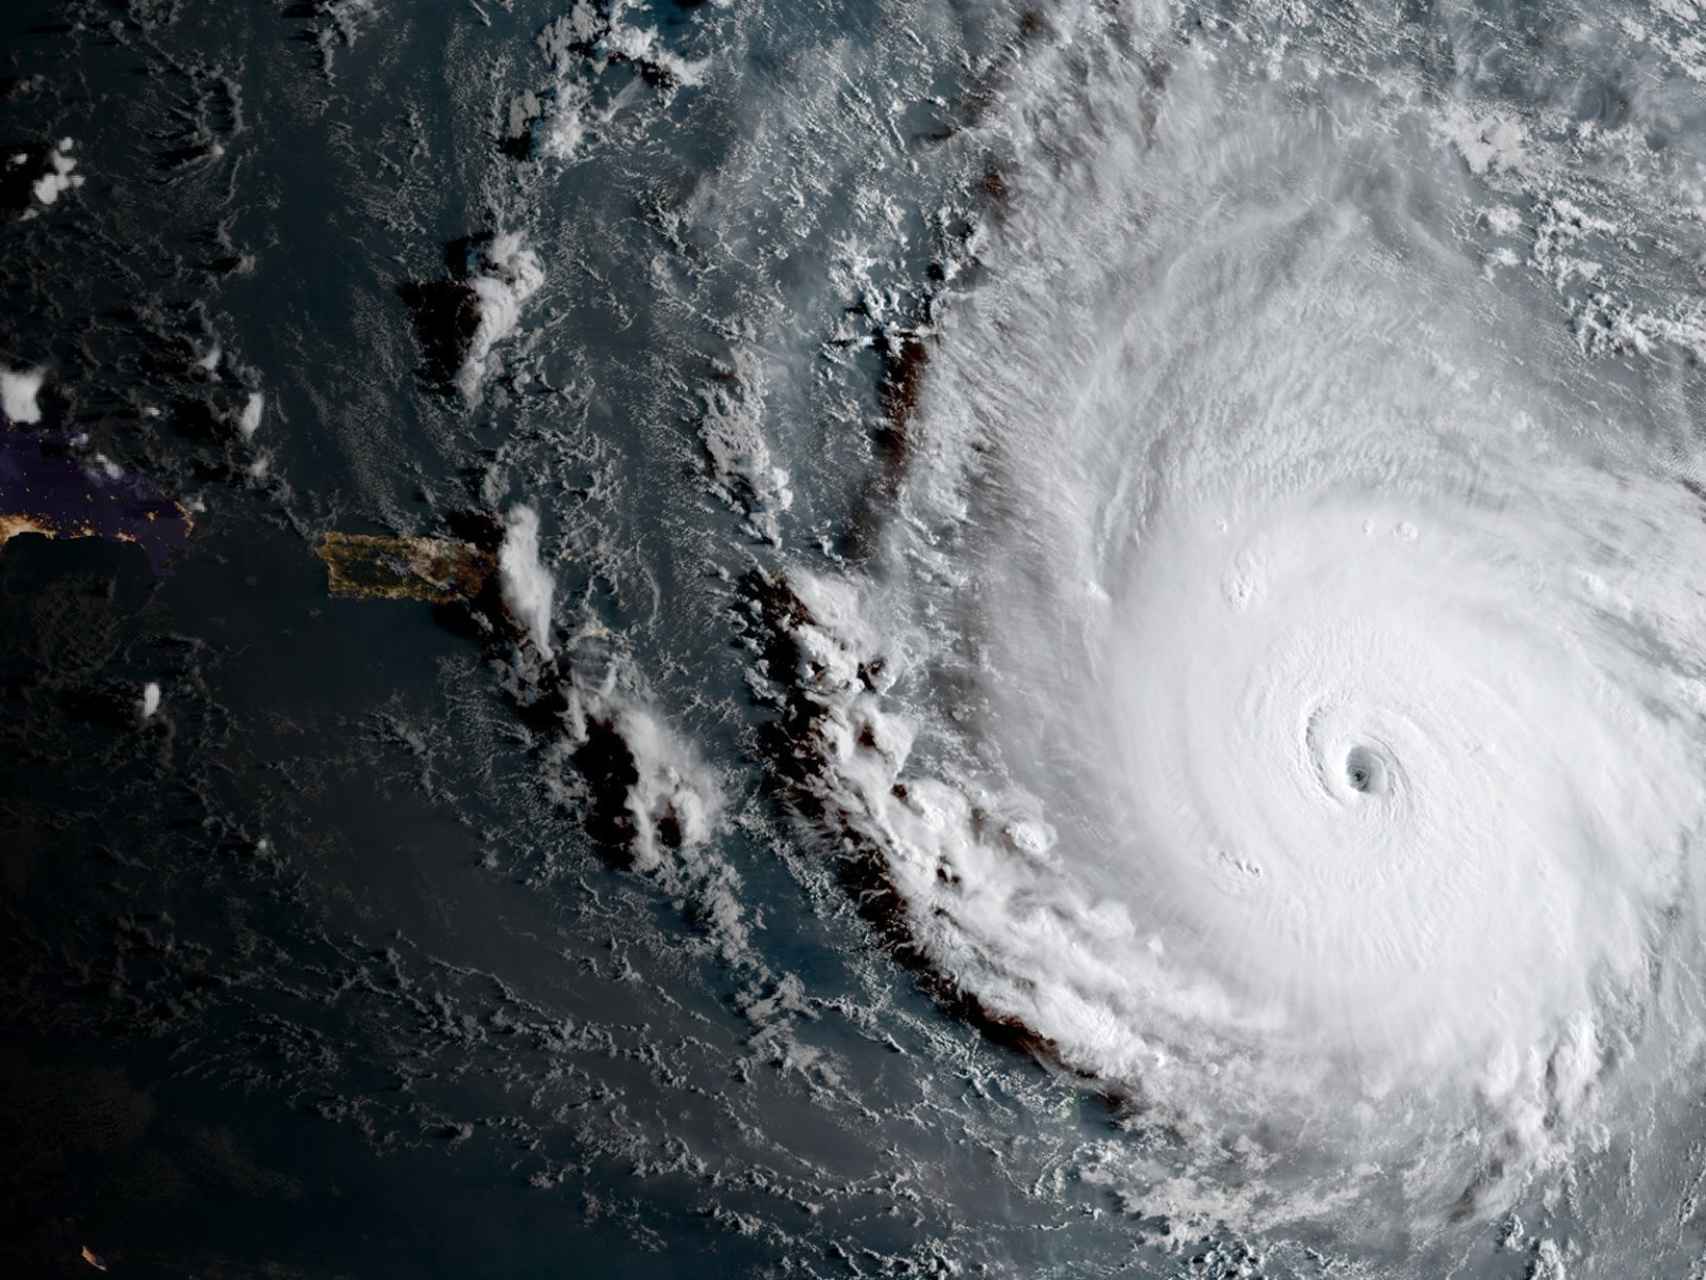 Fotografía satélite del huracán irma.